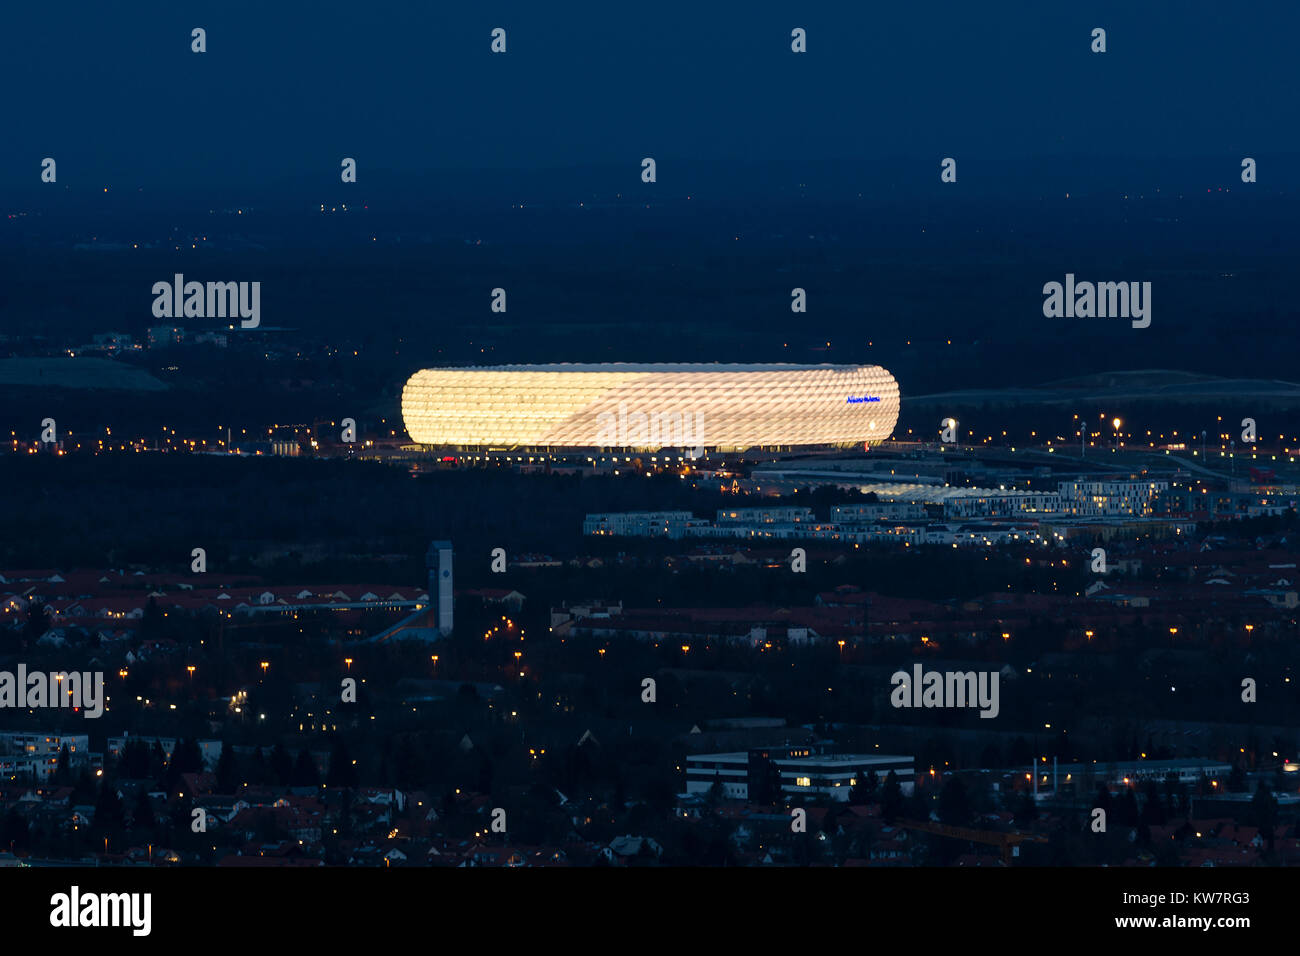 Monaco di Baviera, Germania - 14 dicembre 2016: Notte Vista aerea esterno allo stadio di calcio Allianz Arena la seconda più grande arena in Germania Foto Stock